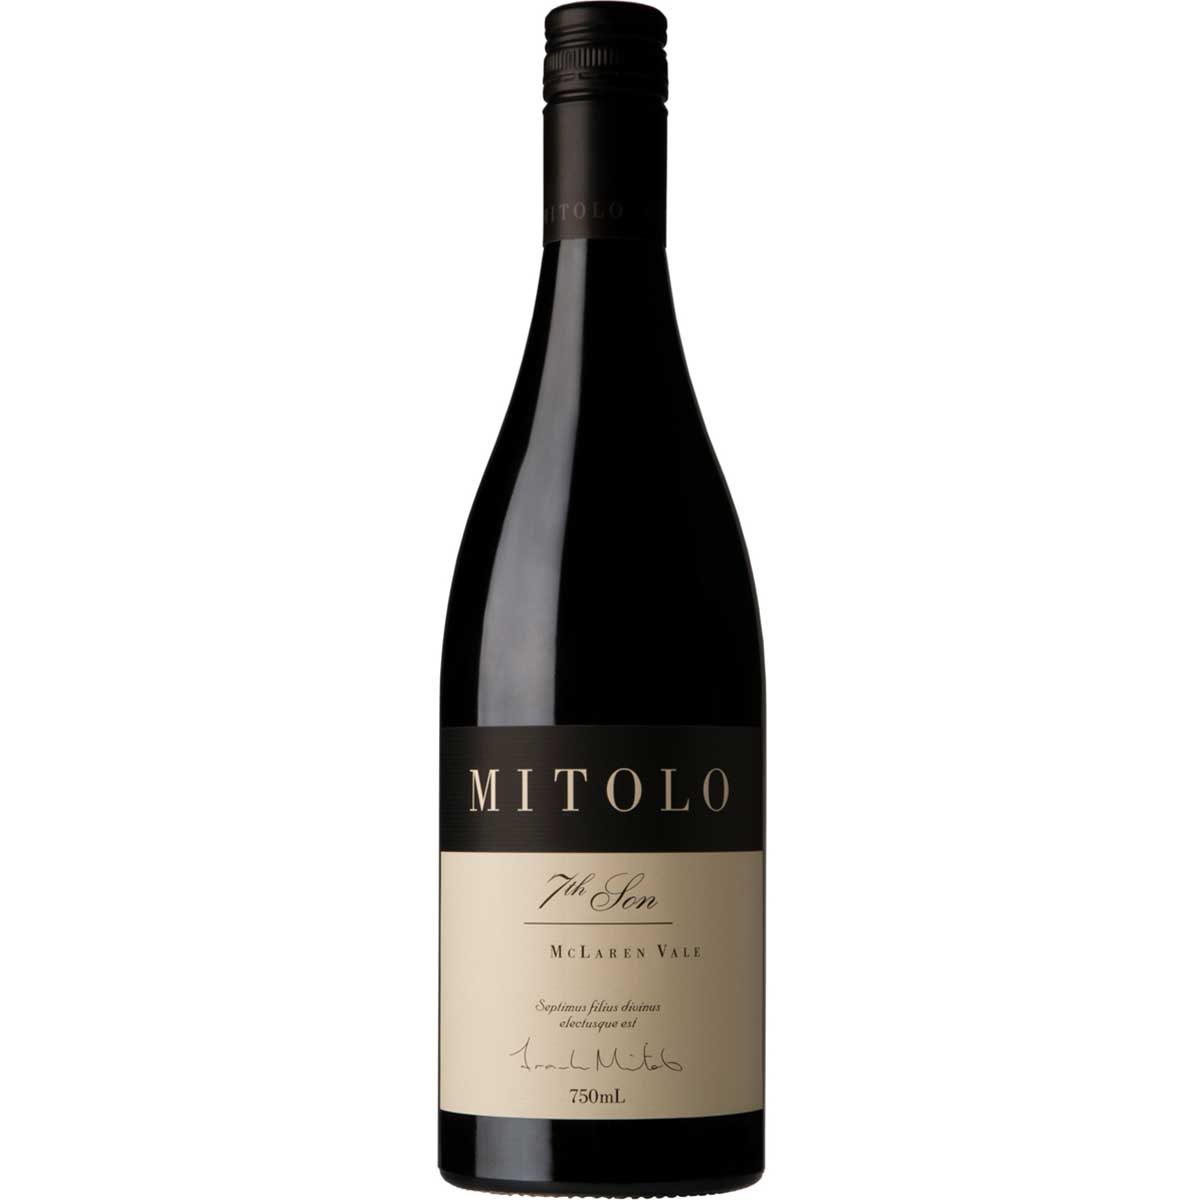 Buy Mitolo 7th Son Grenache Shiraz Sagrantino at Wines Online Singapore